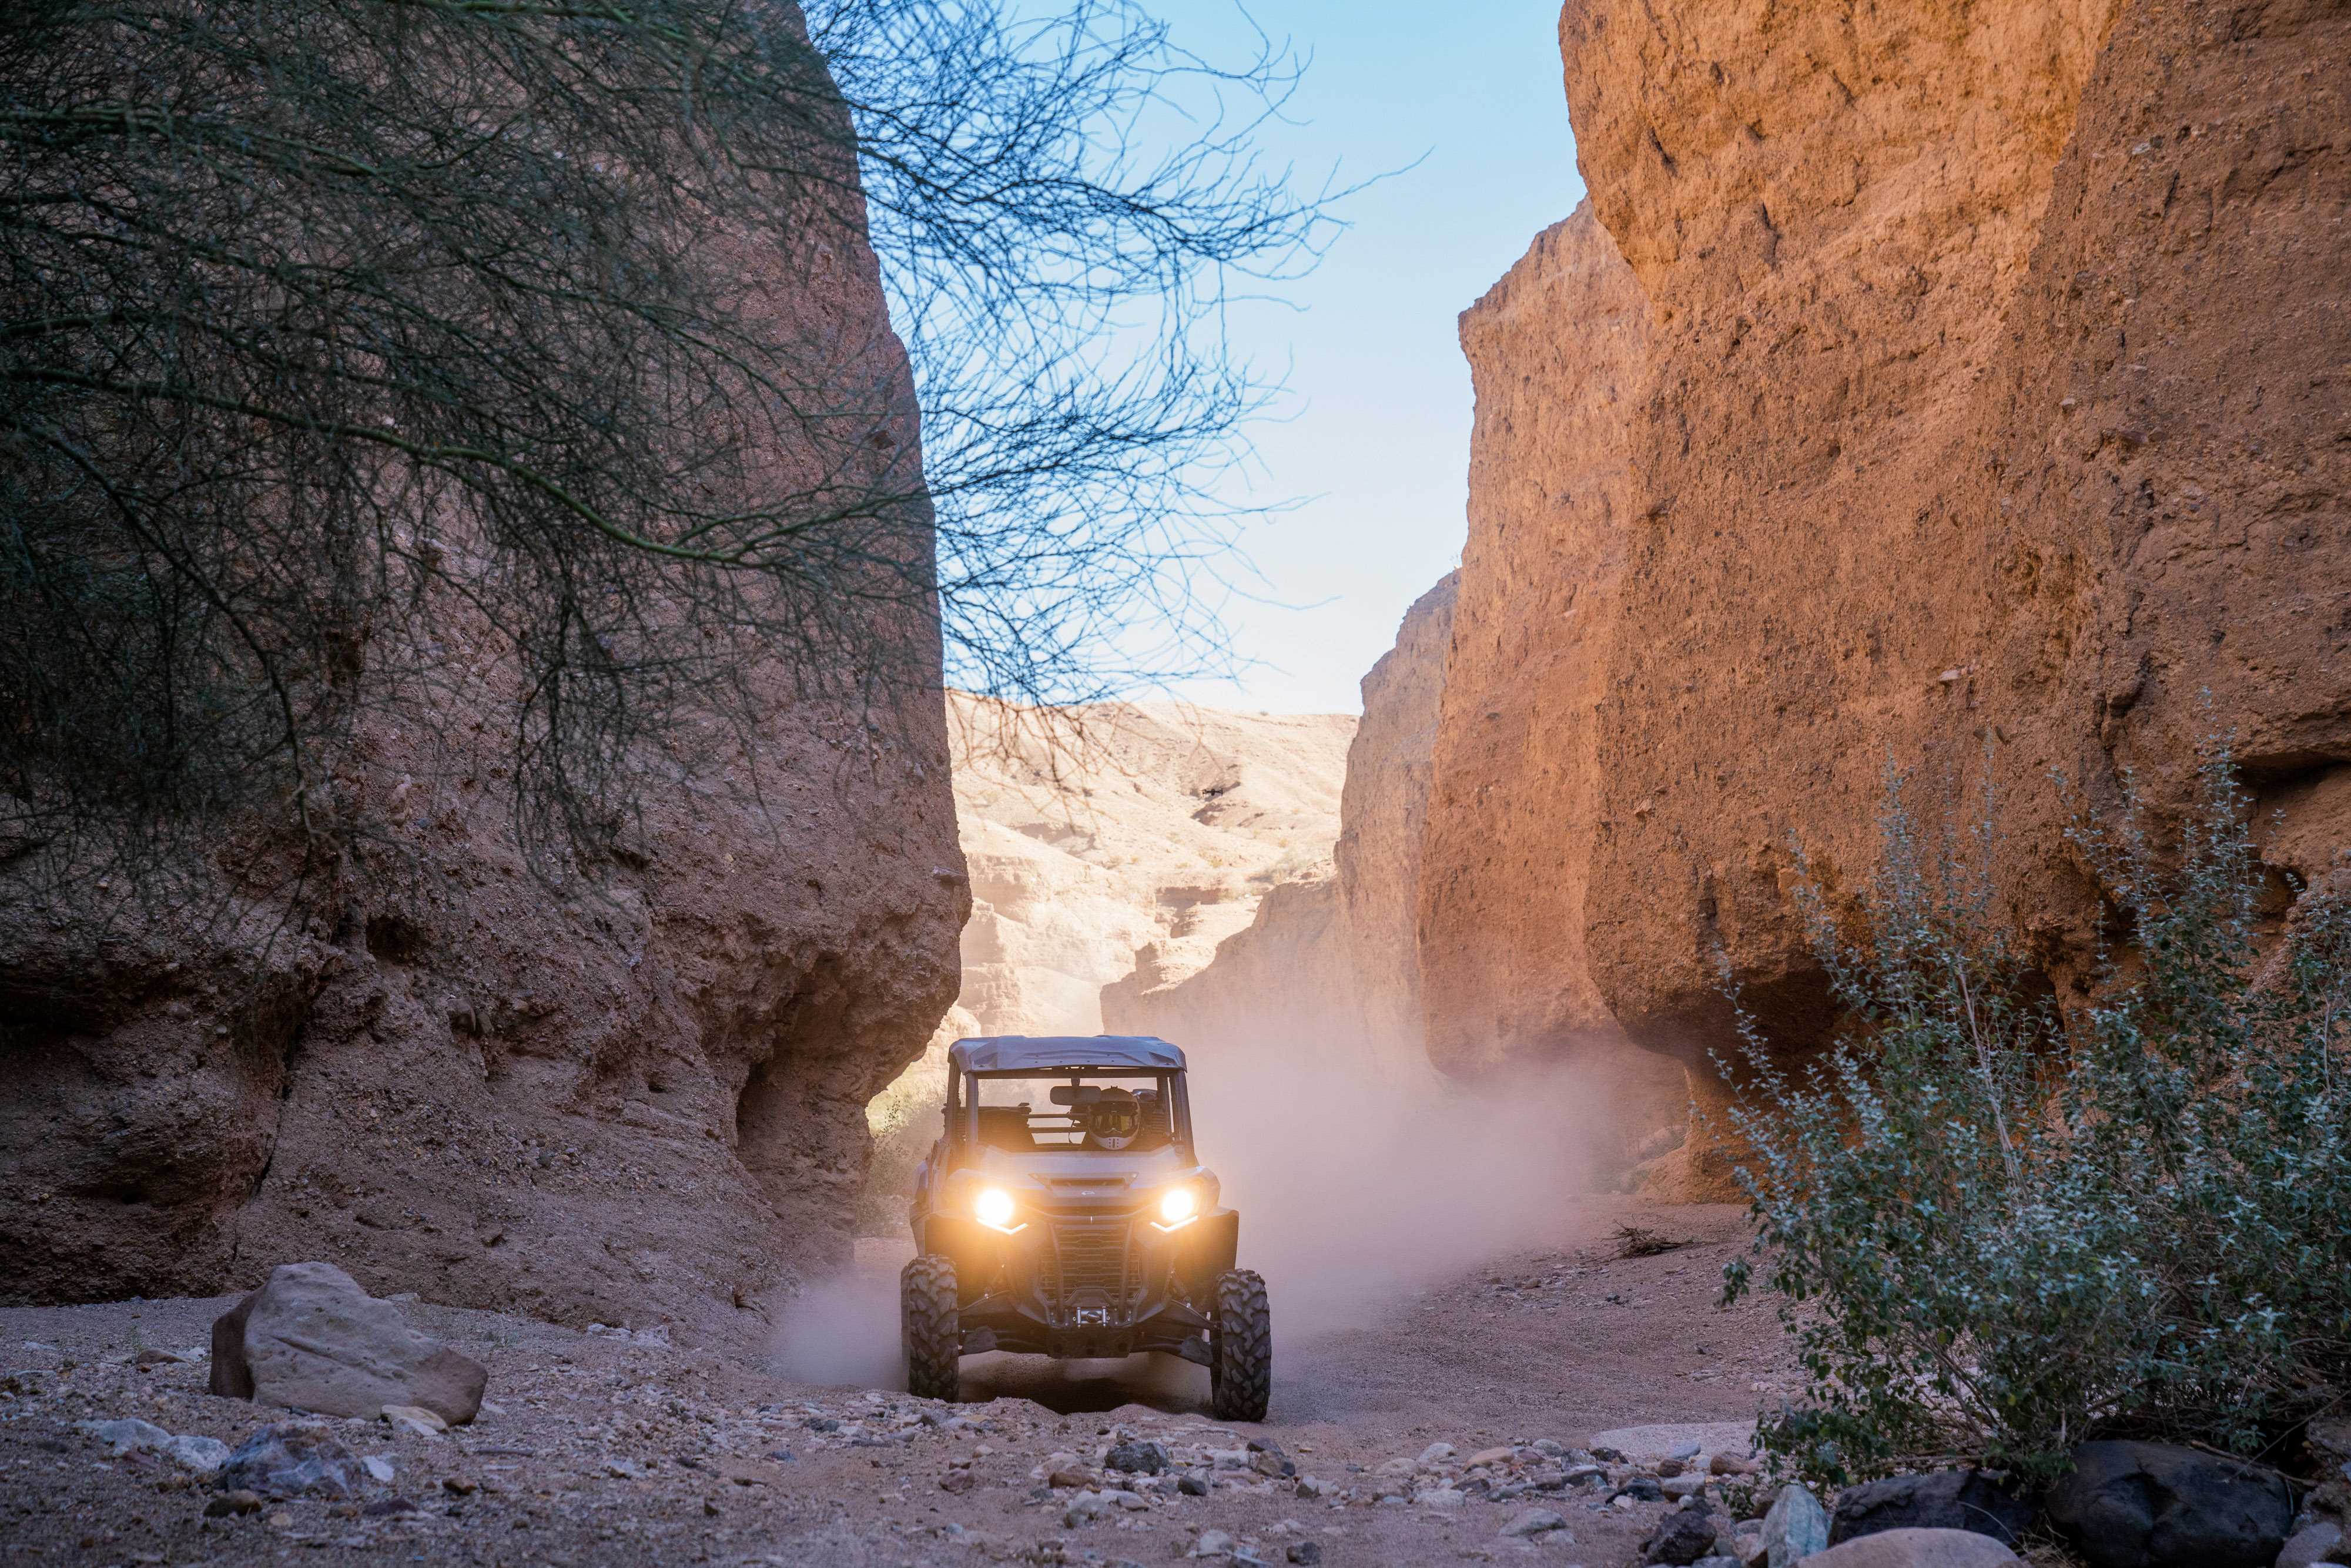 Vue de face d'un Can-Am Defender roulant entre deux parois rocheuses dans un décor désertique.